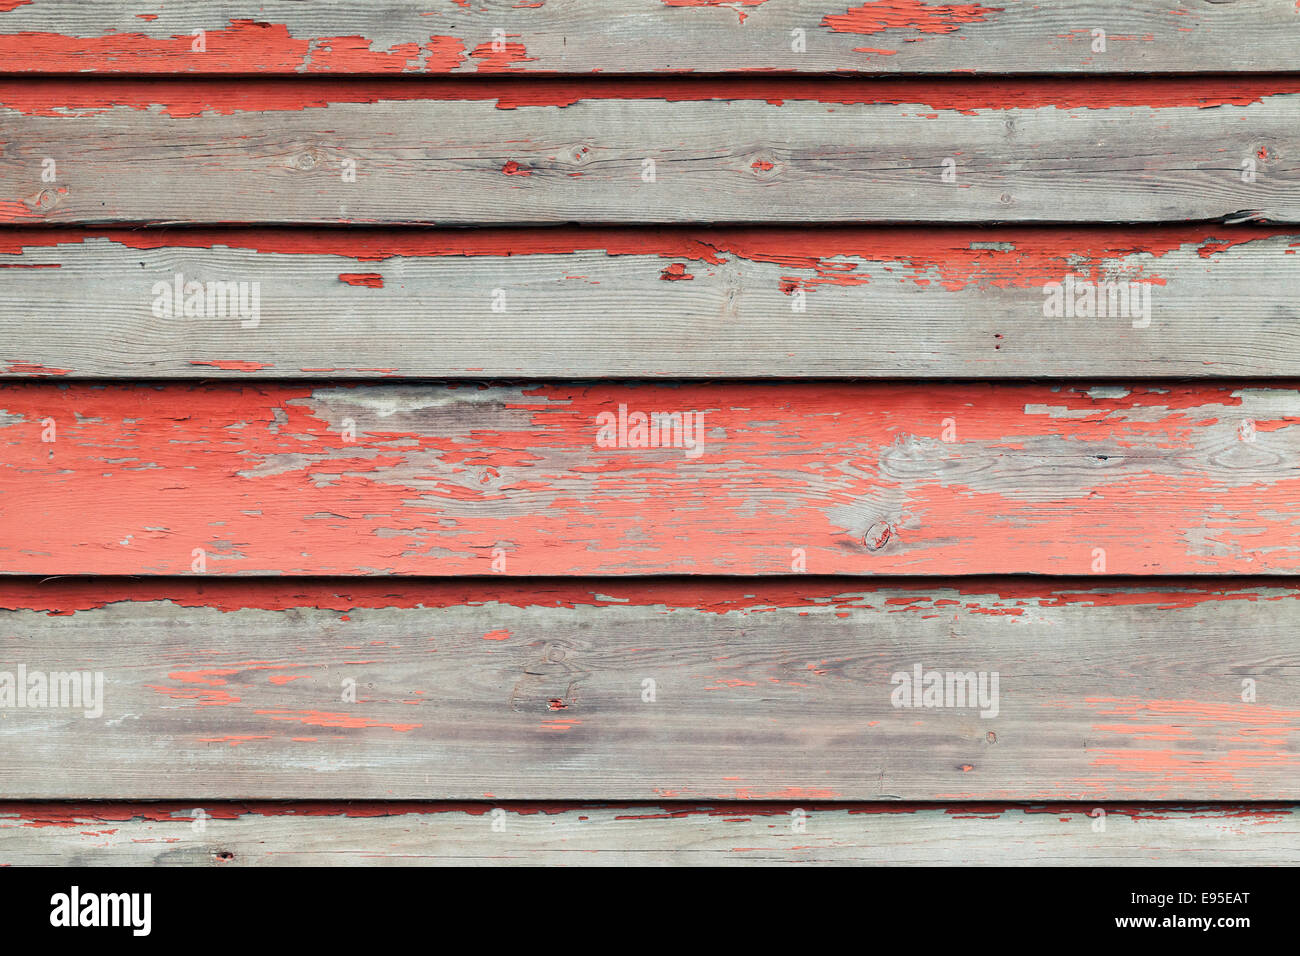 Vieux mur en bois avec de la peinture rouge, texture de fond photo vintage Banque D'Images